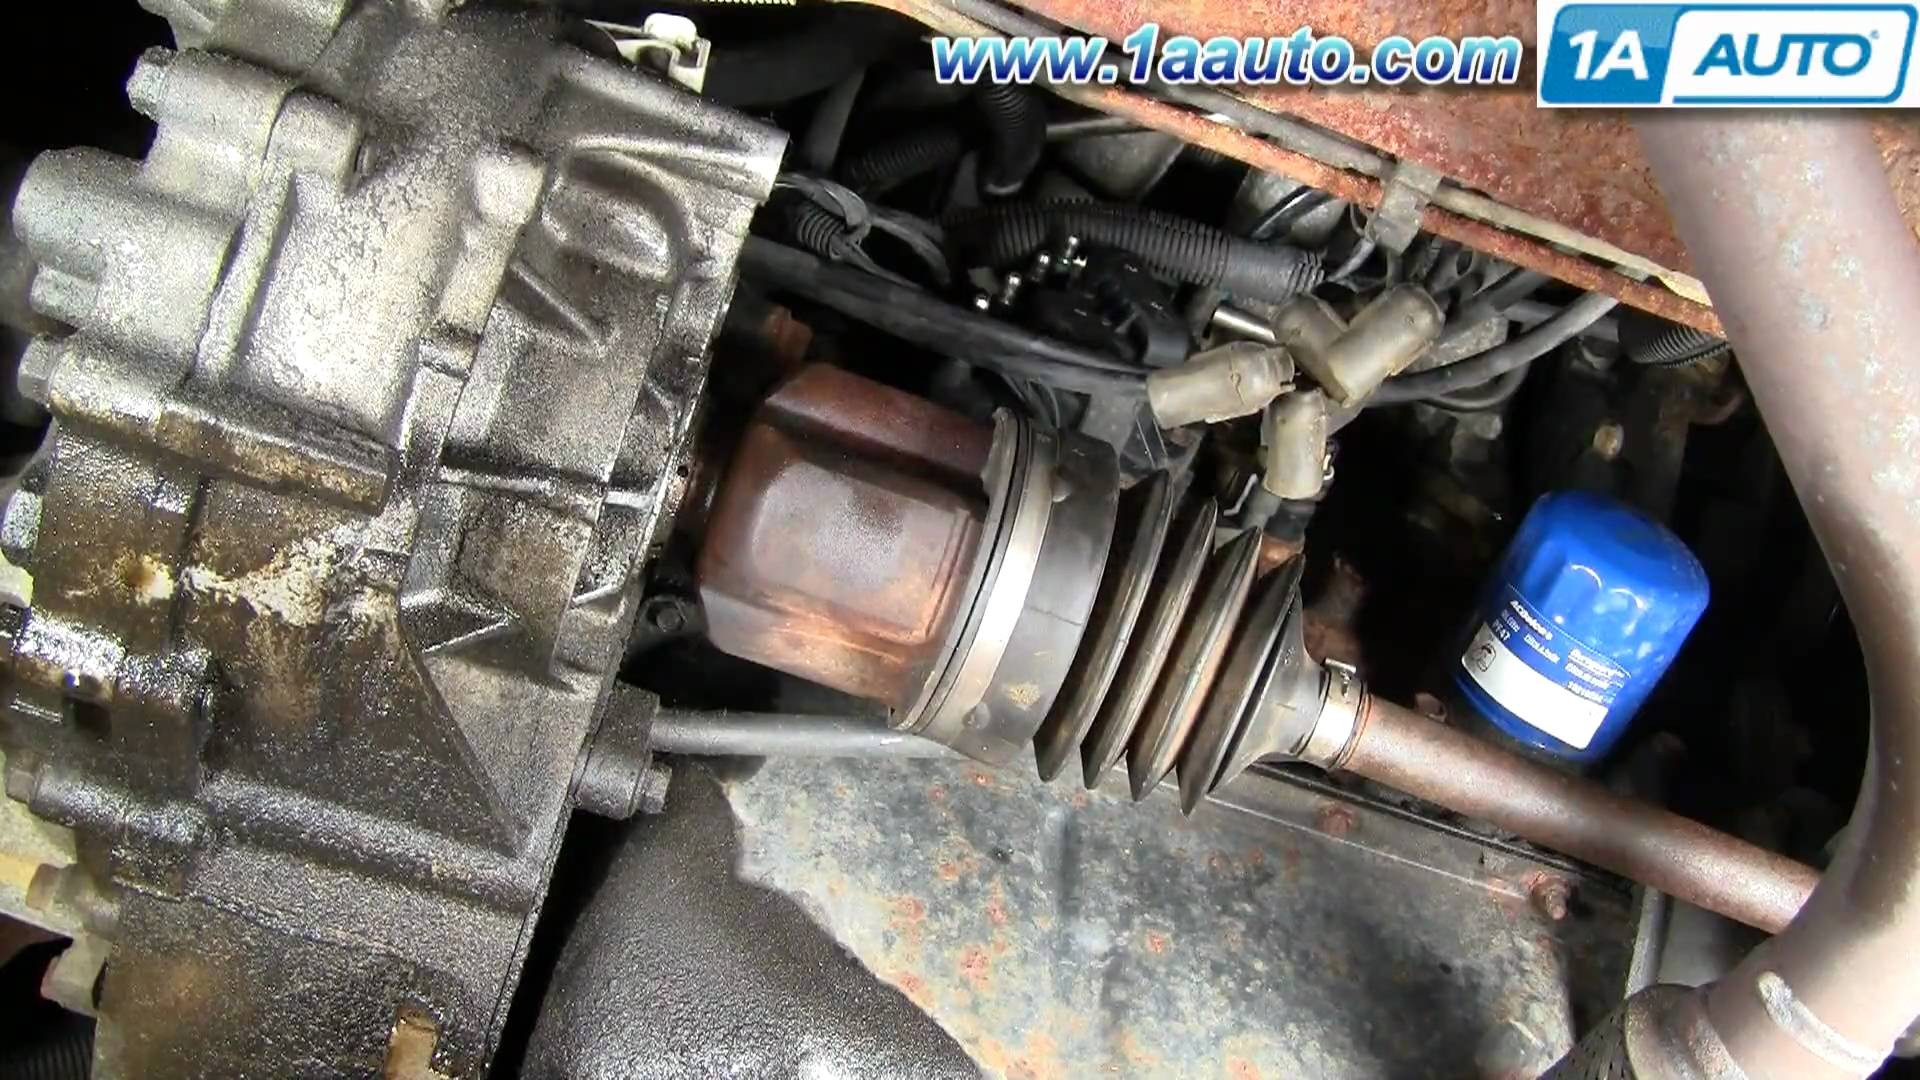 Pontiac Sunfire Engine Diagram How to Install Replace Ignition Coil Chevy Cavalier Pontiac Sunfire Of Pontiac Sunfire Engine Diagram